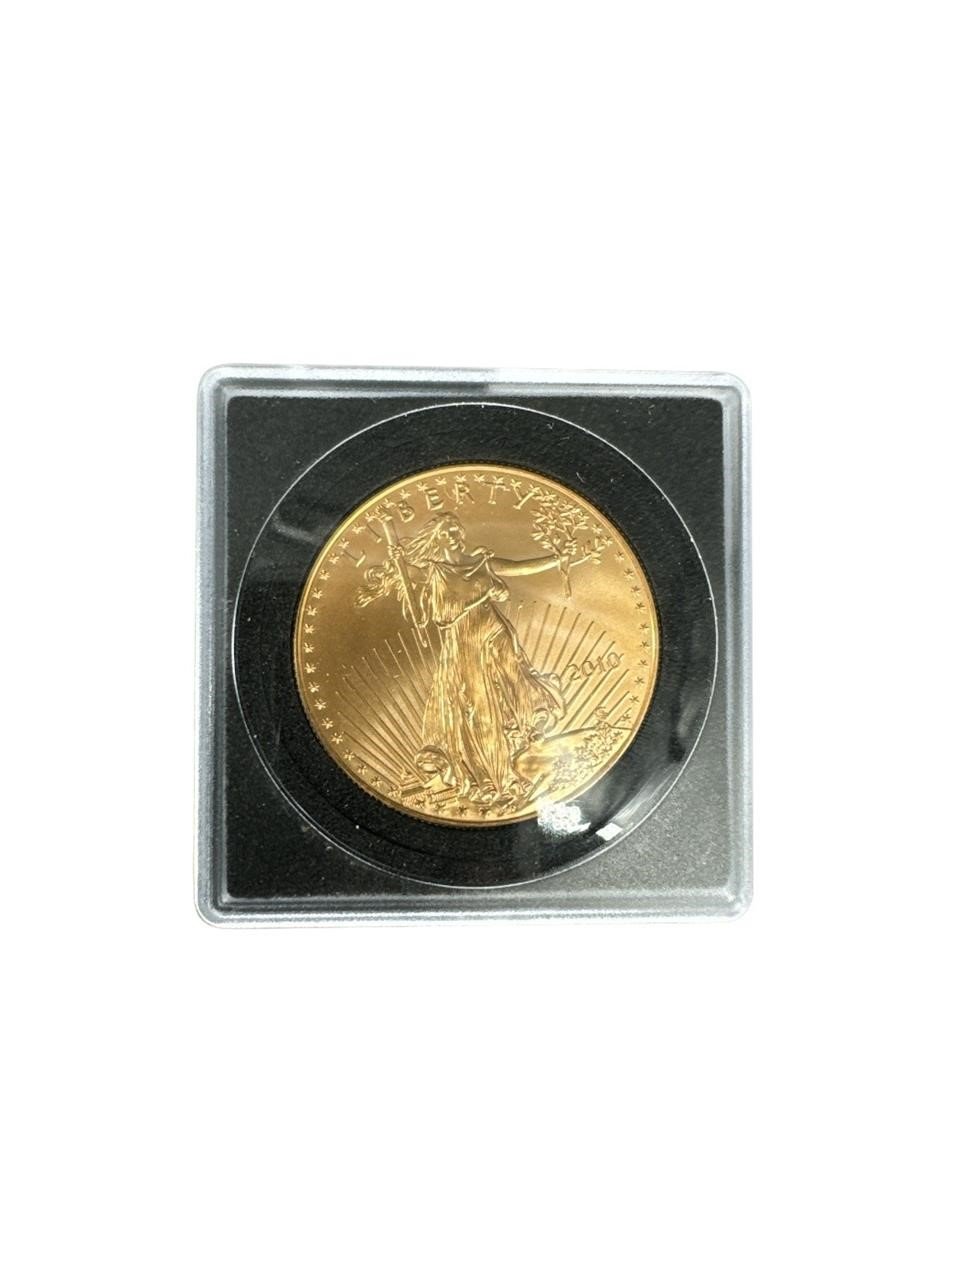 1 OZ .999 FINE GOLD AMERICAN EAGLE $50 COIN